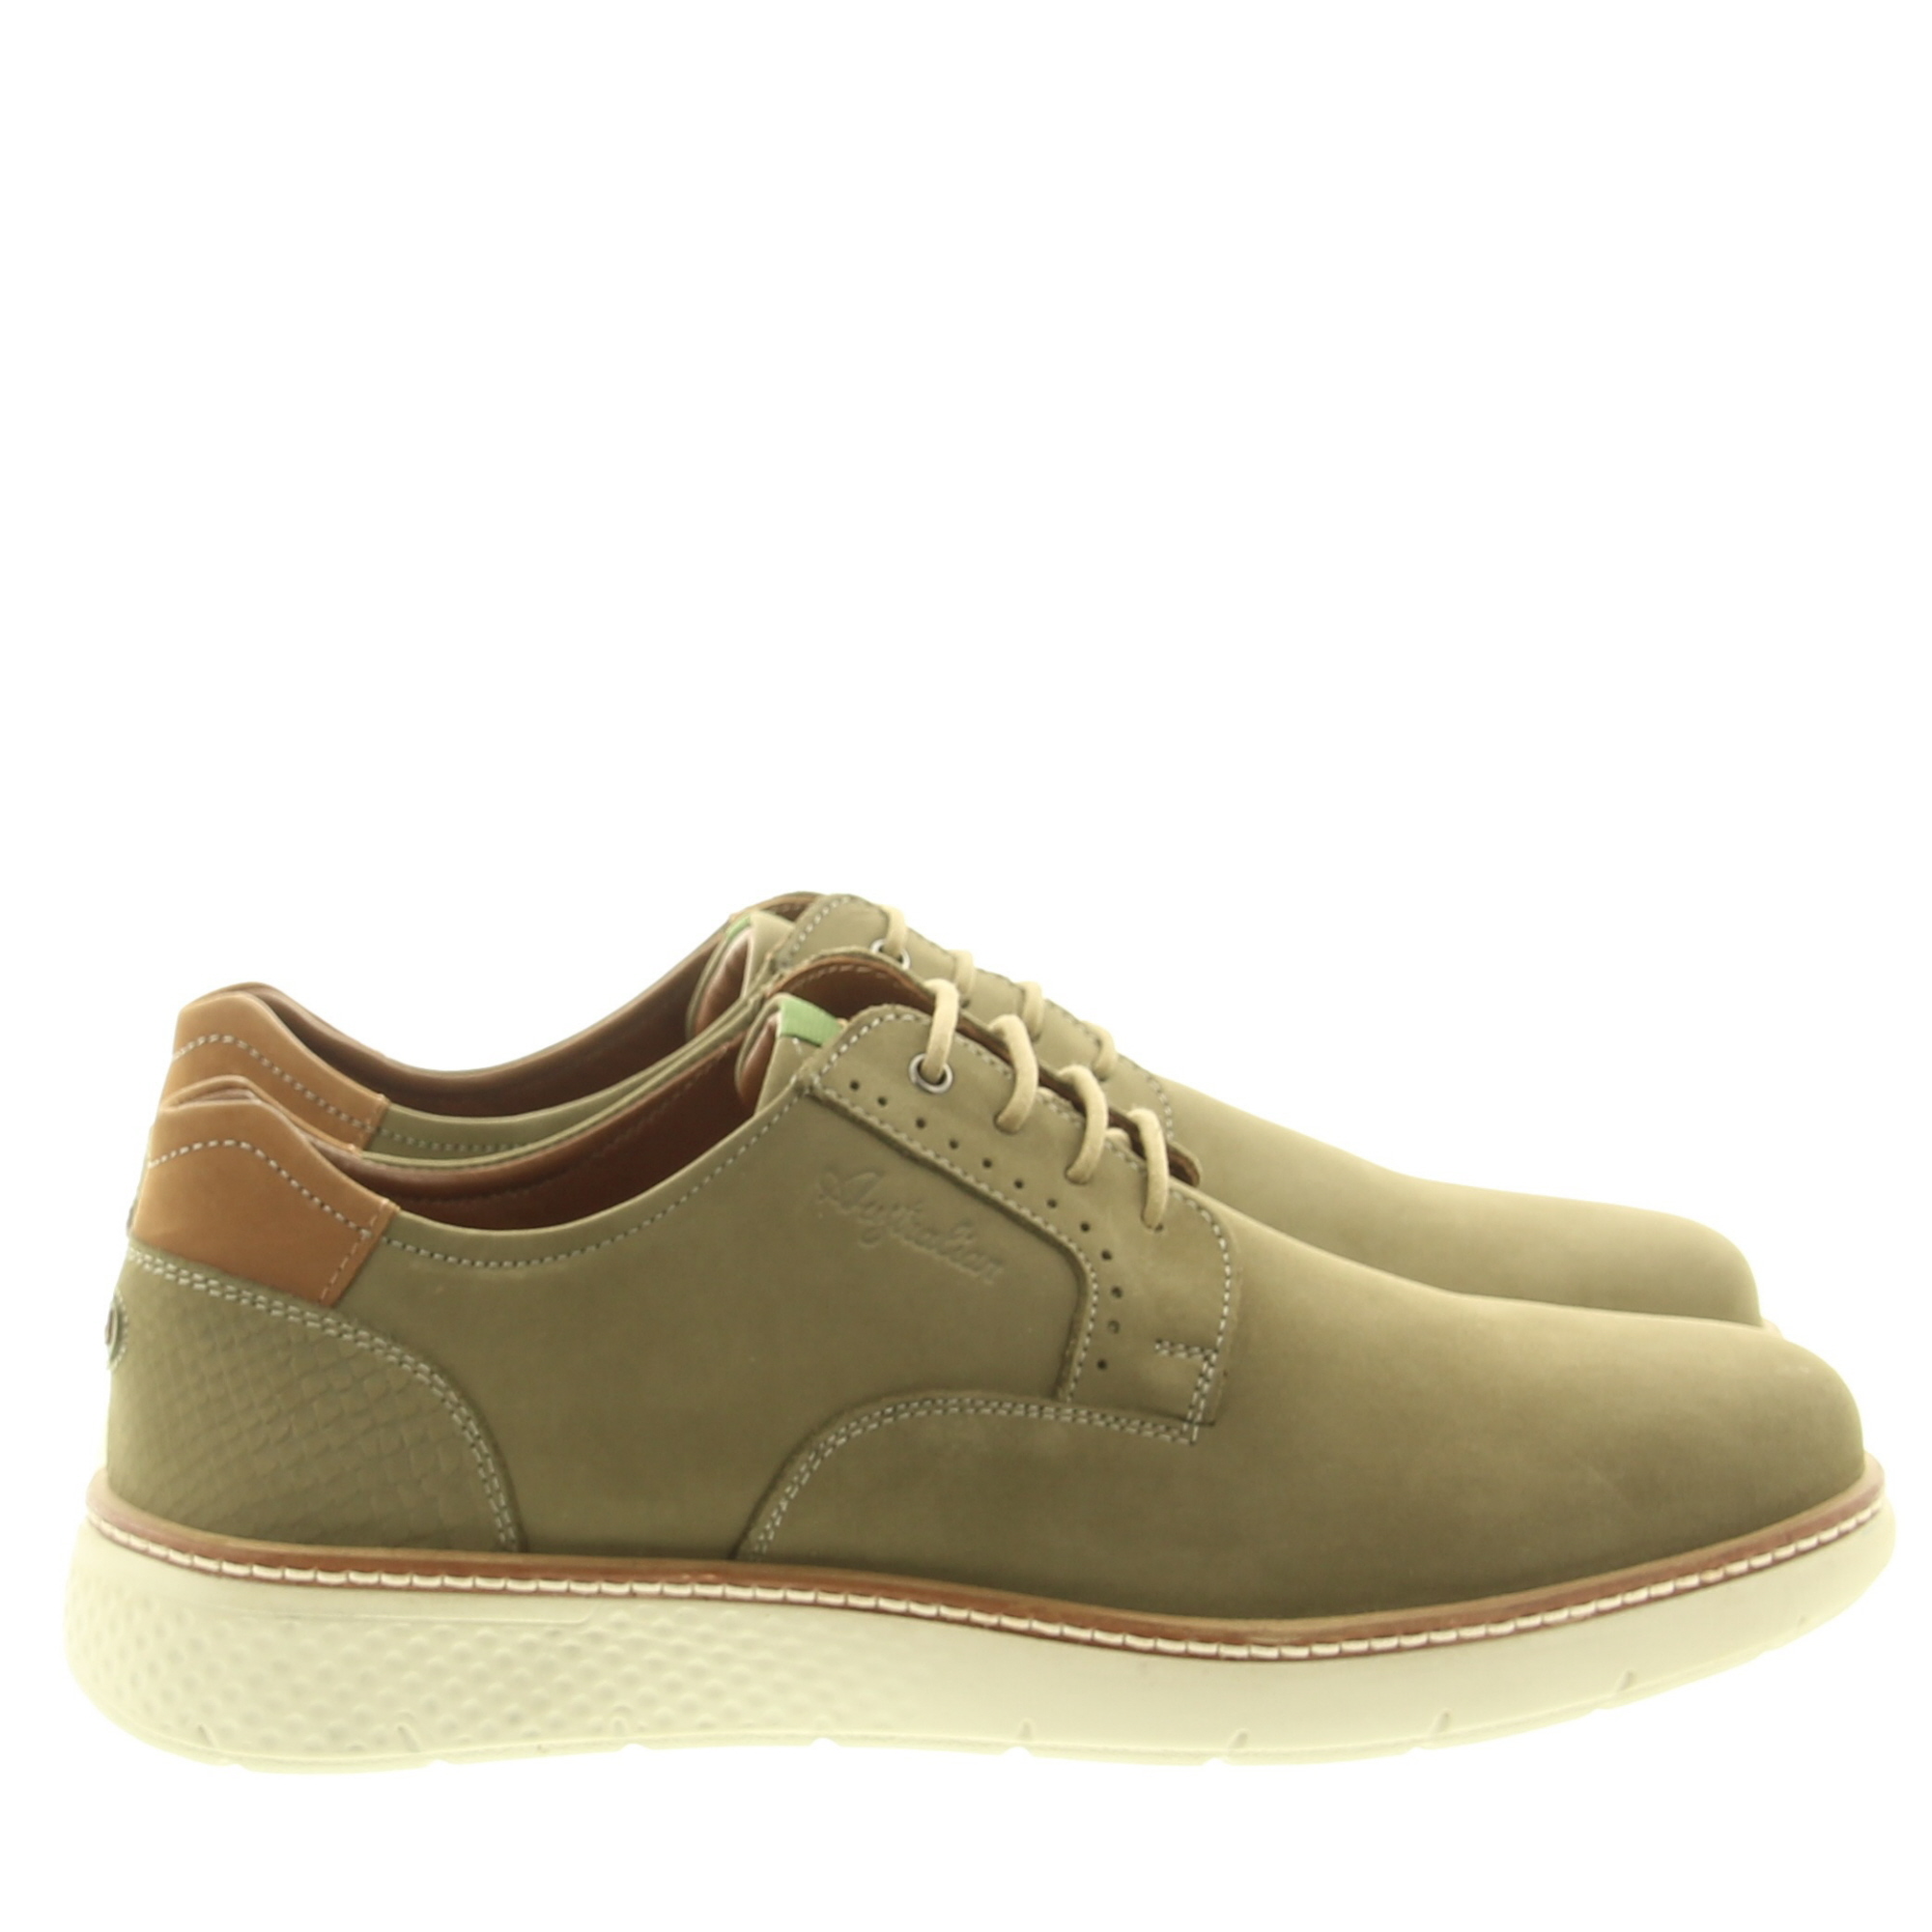 Australian Footwear Preston 15.1560.01 EB7 Light Green